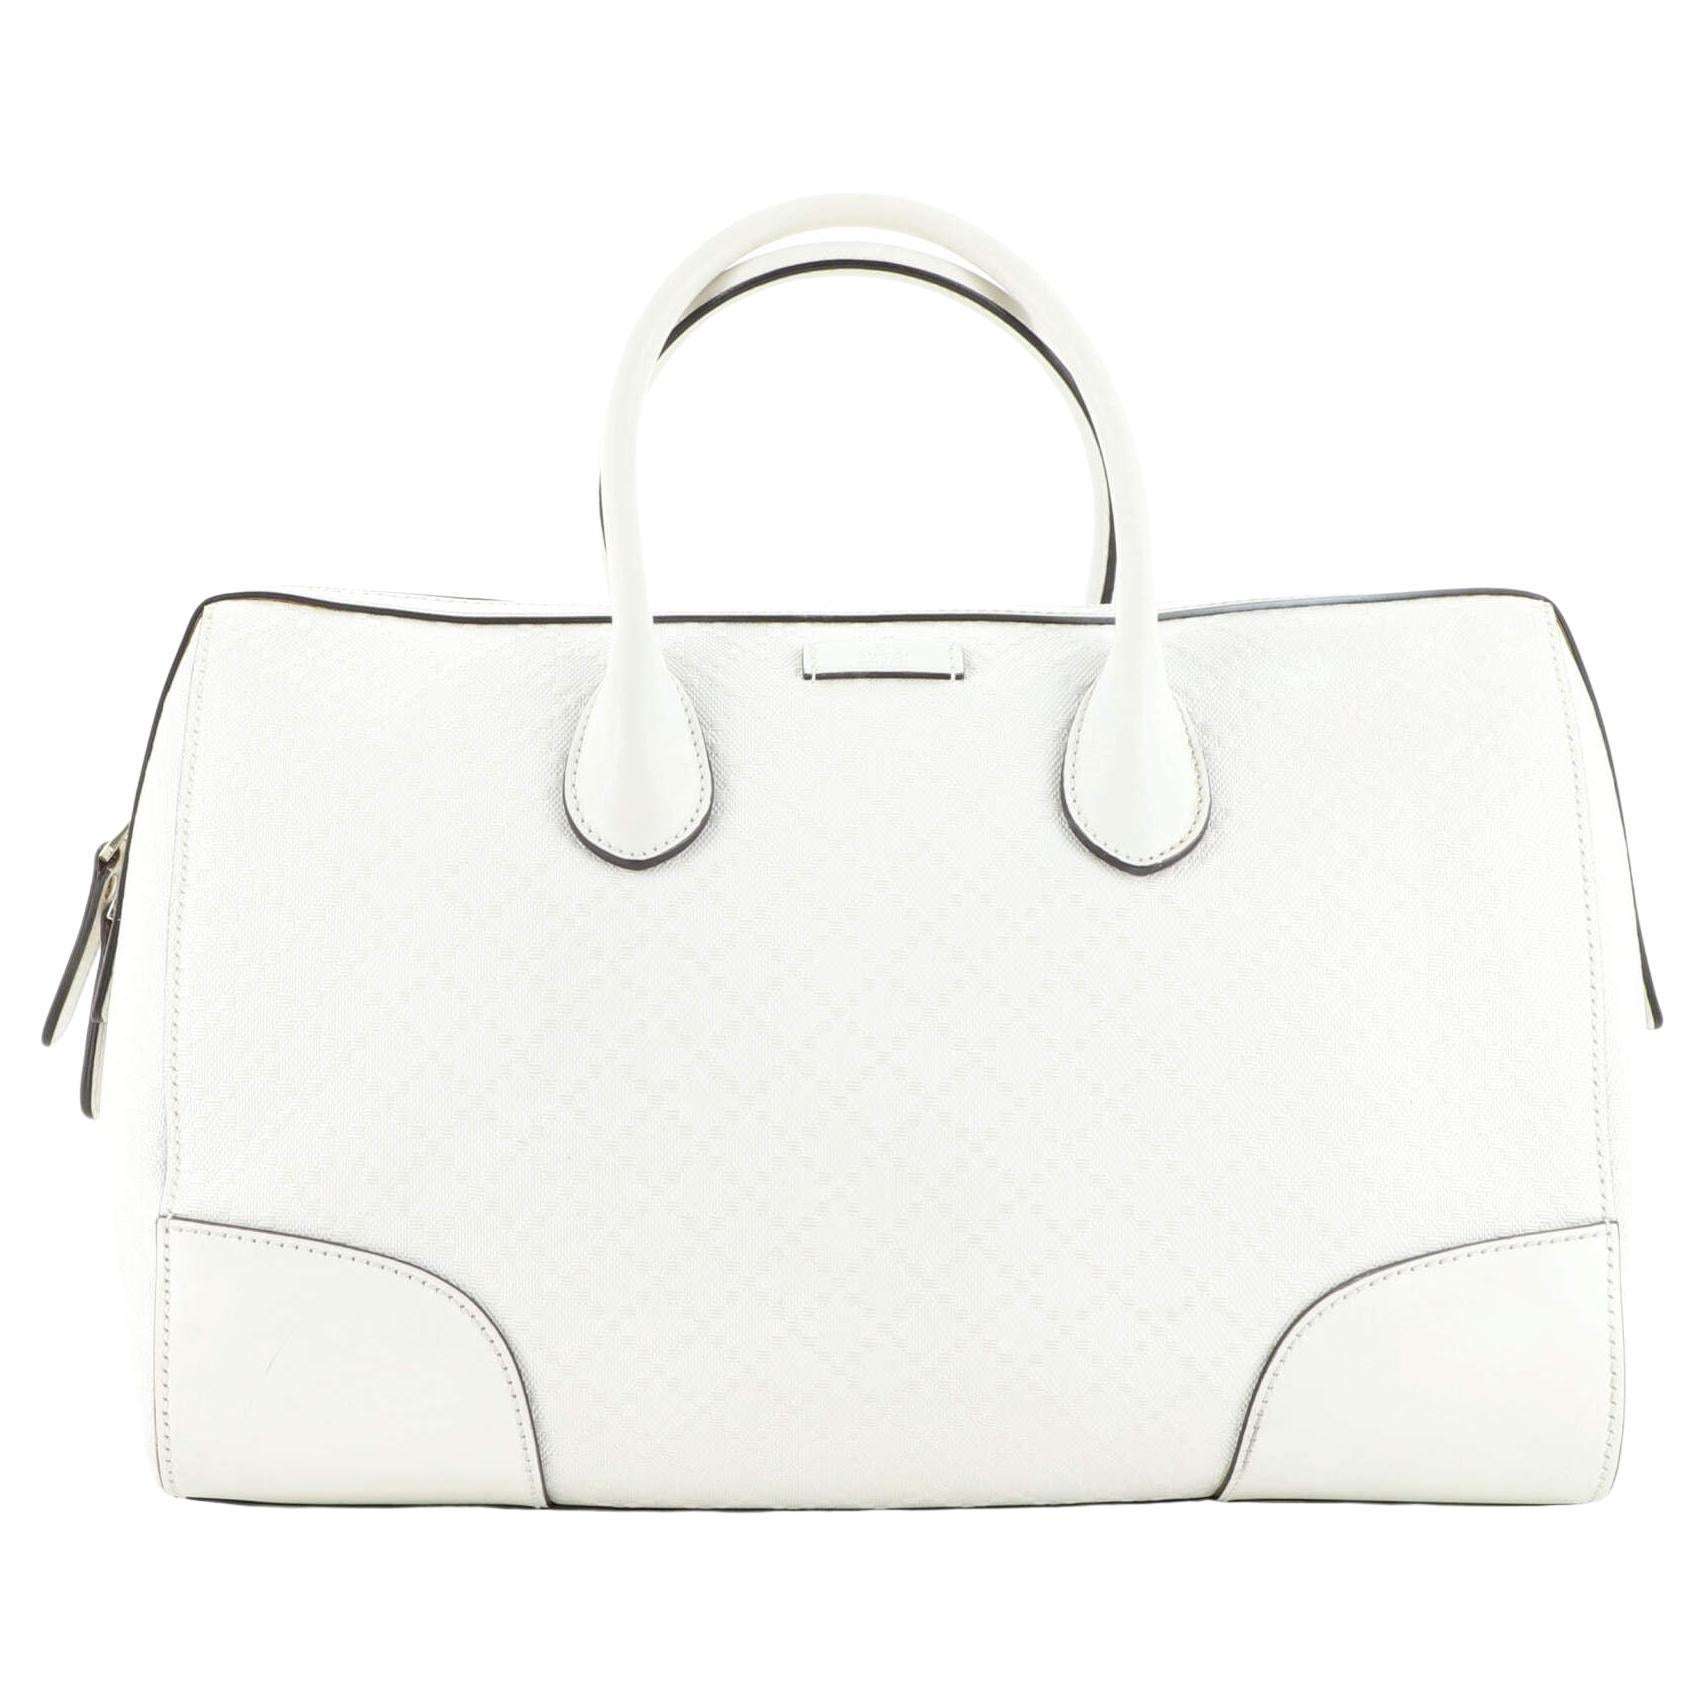 Gucci Bright Convertible Boston Bag Diamante Leather Medium